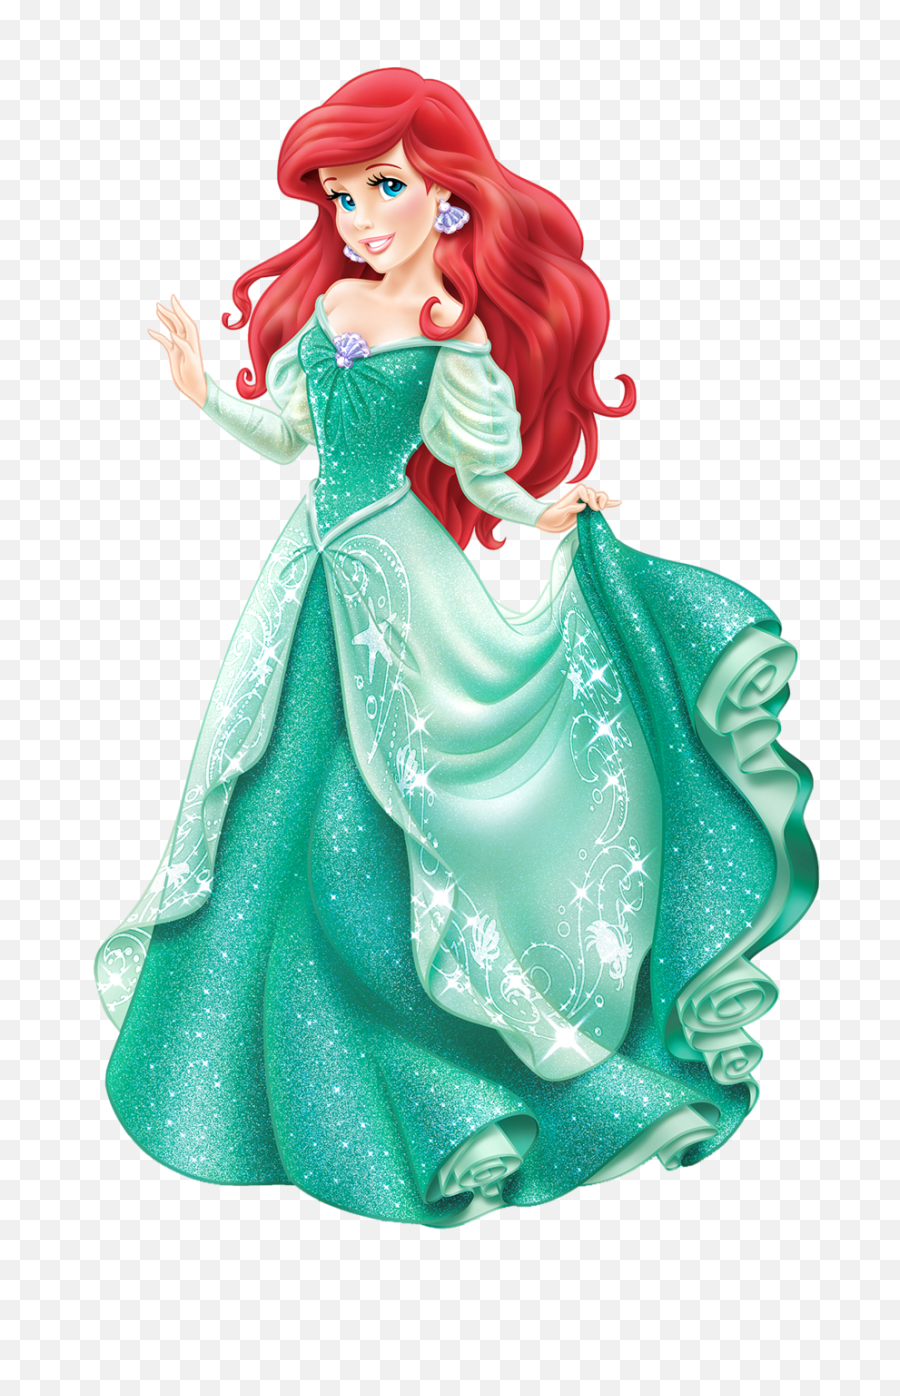 Little Mermaid Font Ariel Pictures - 2383 Transparentpng Ariel Disney Princess,The Little Mermaid Png